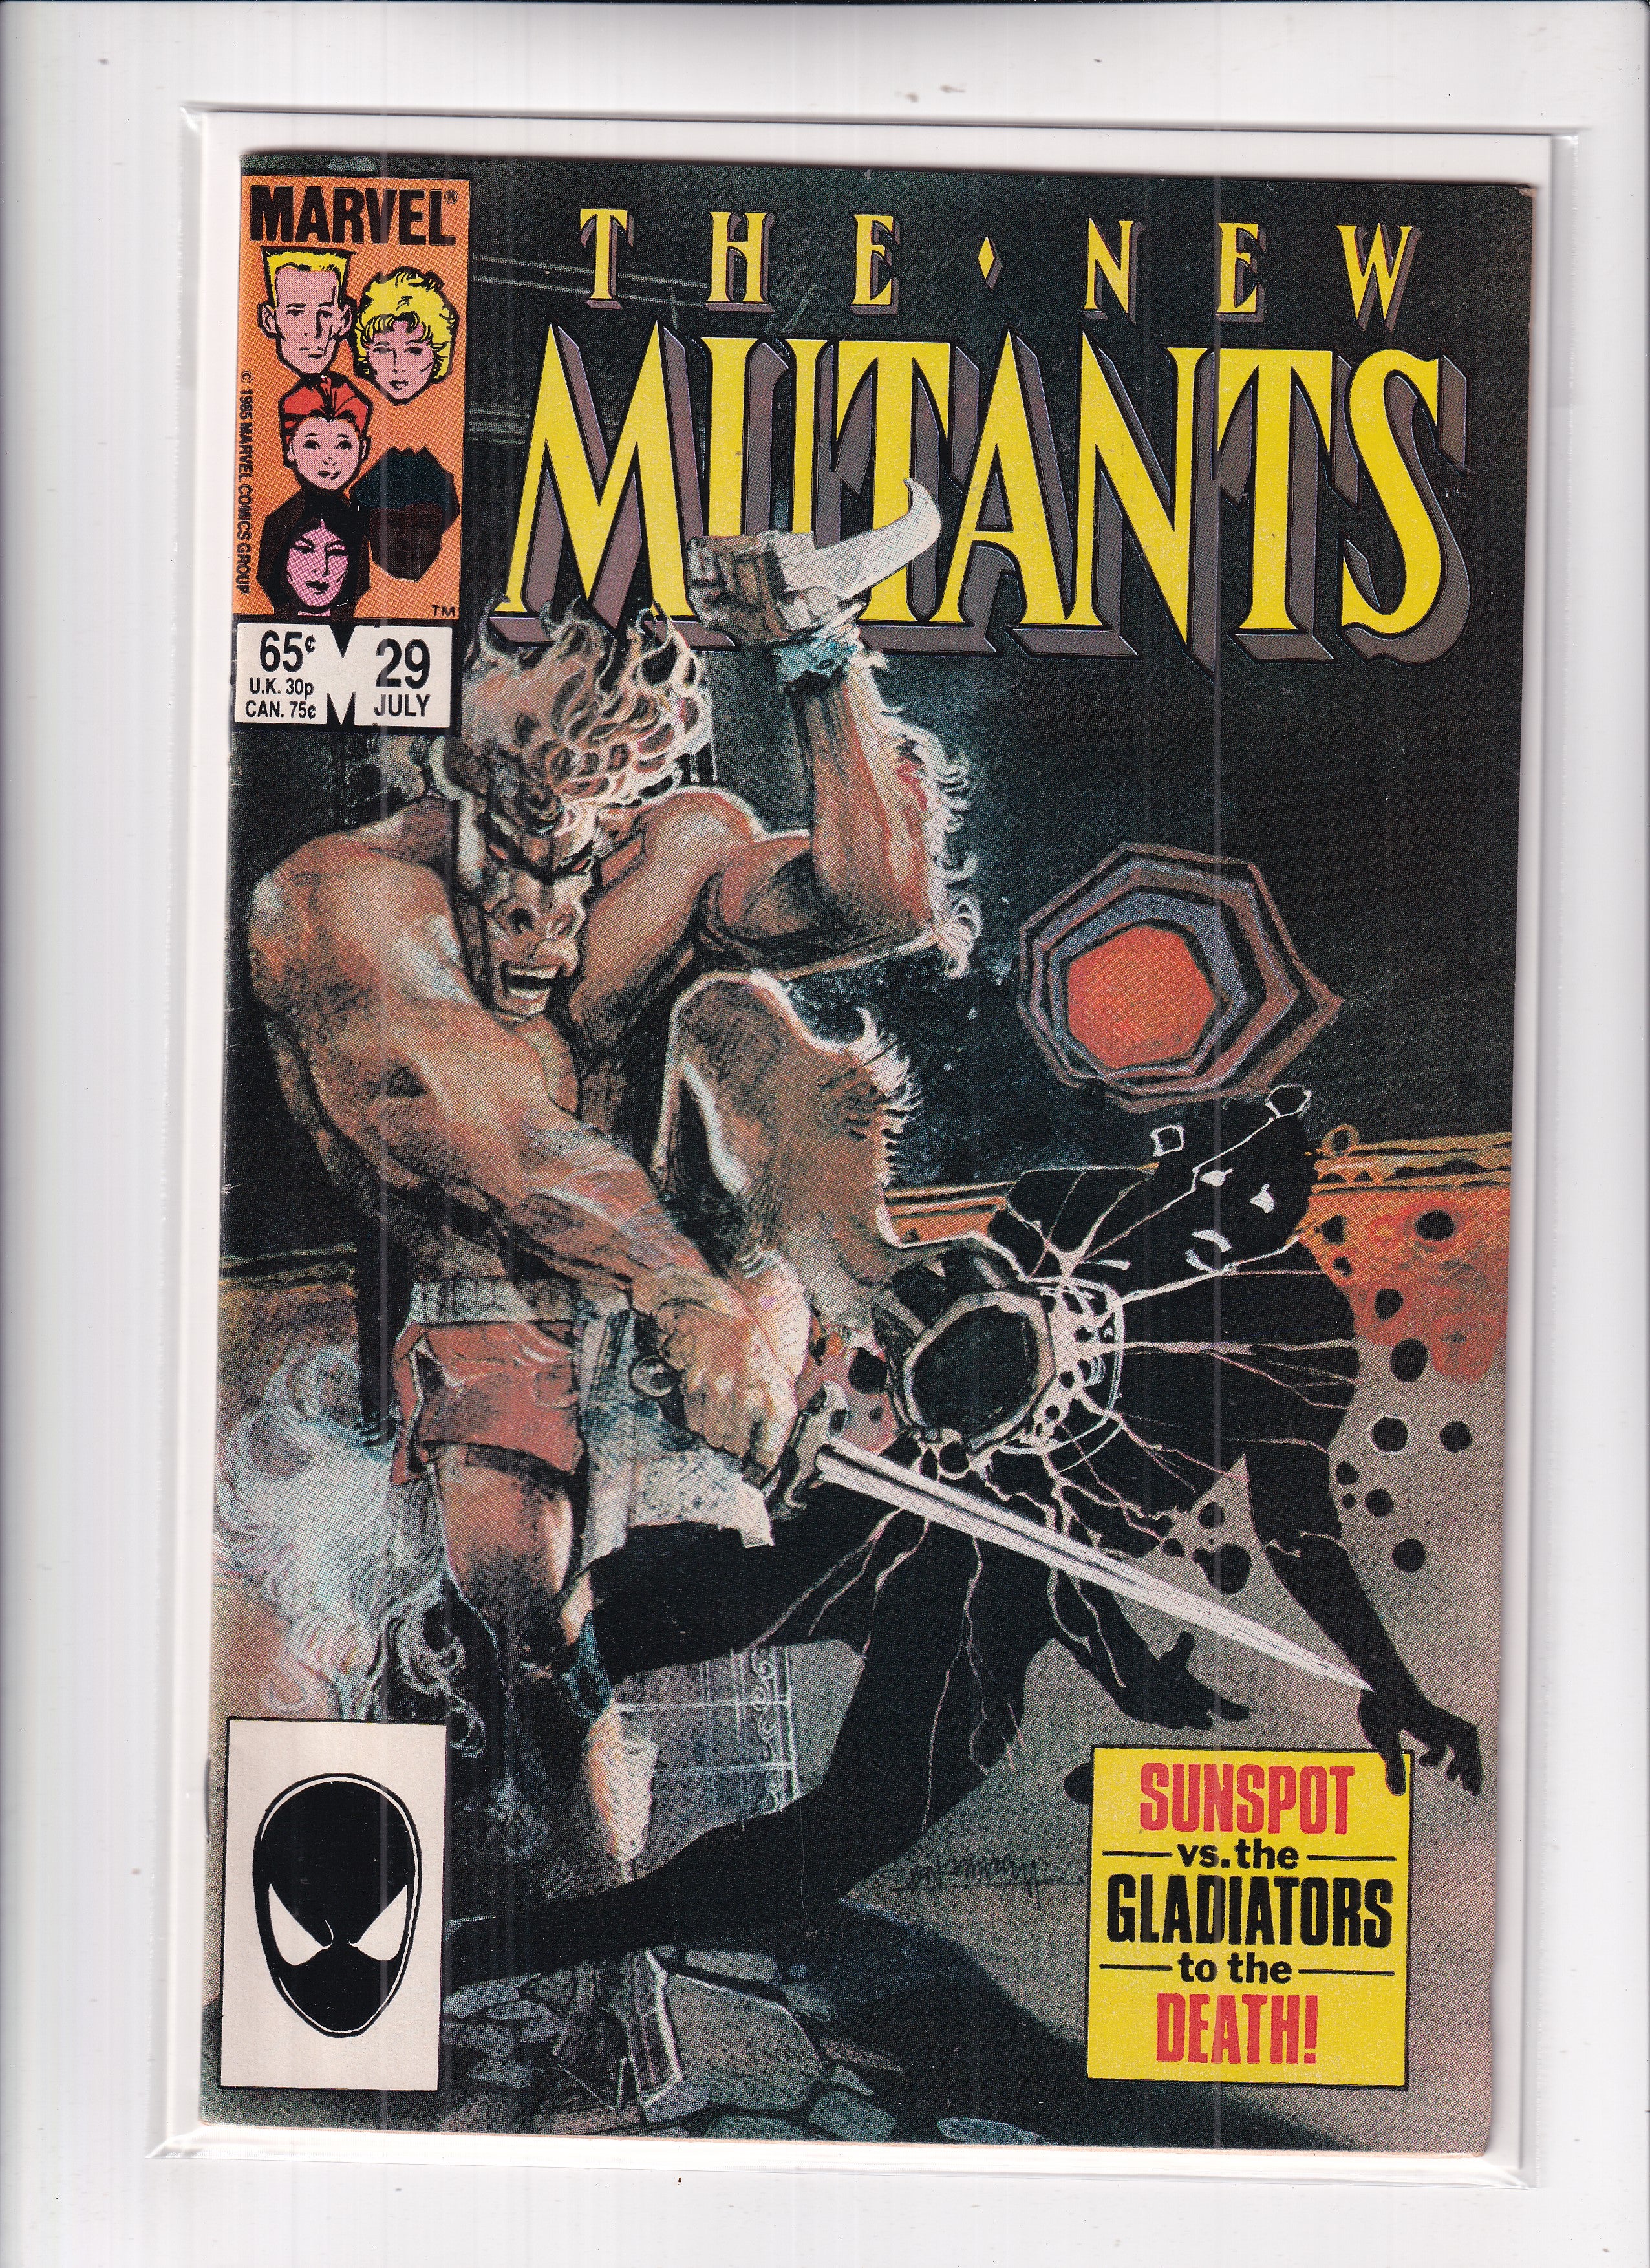 New Mutants #29